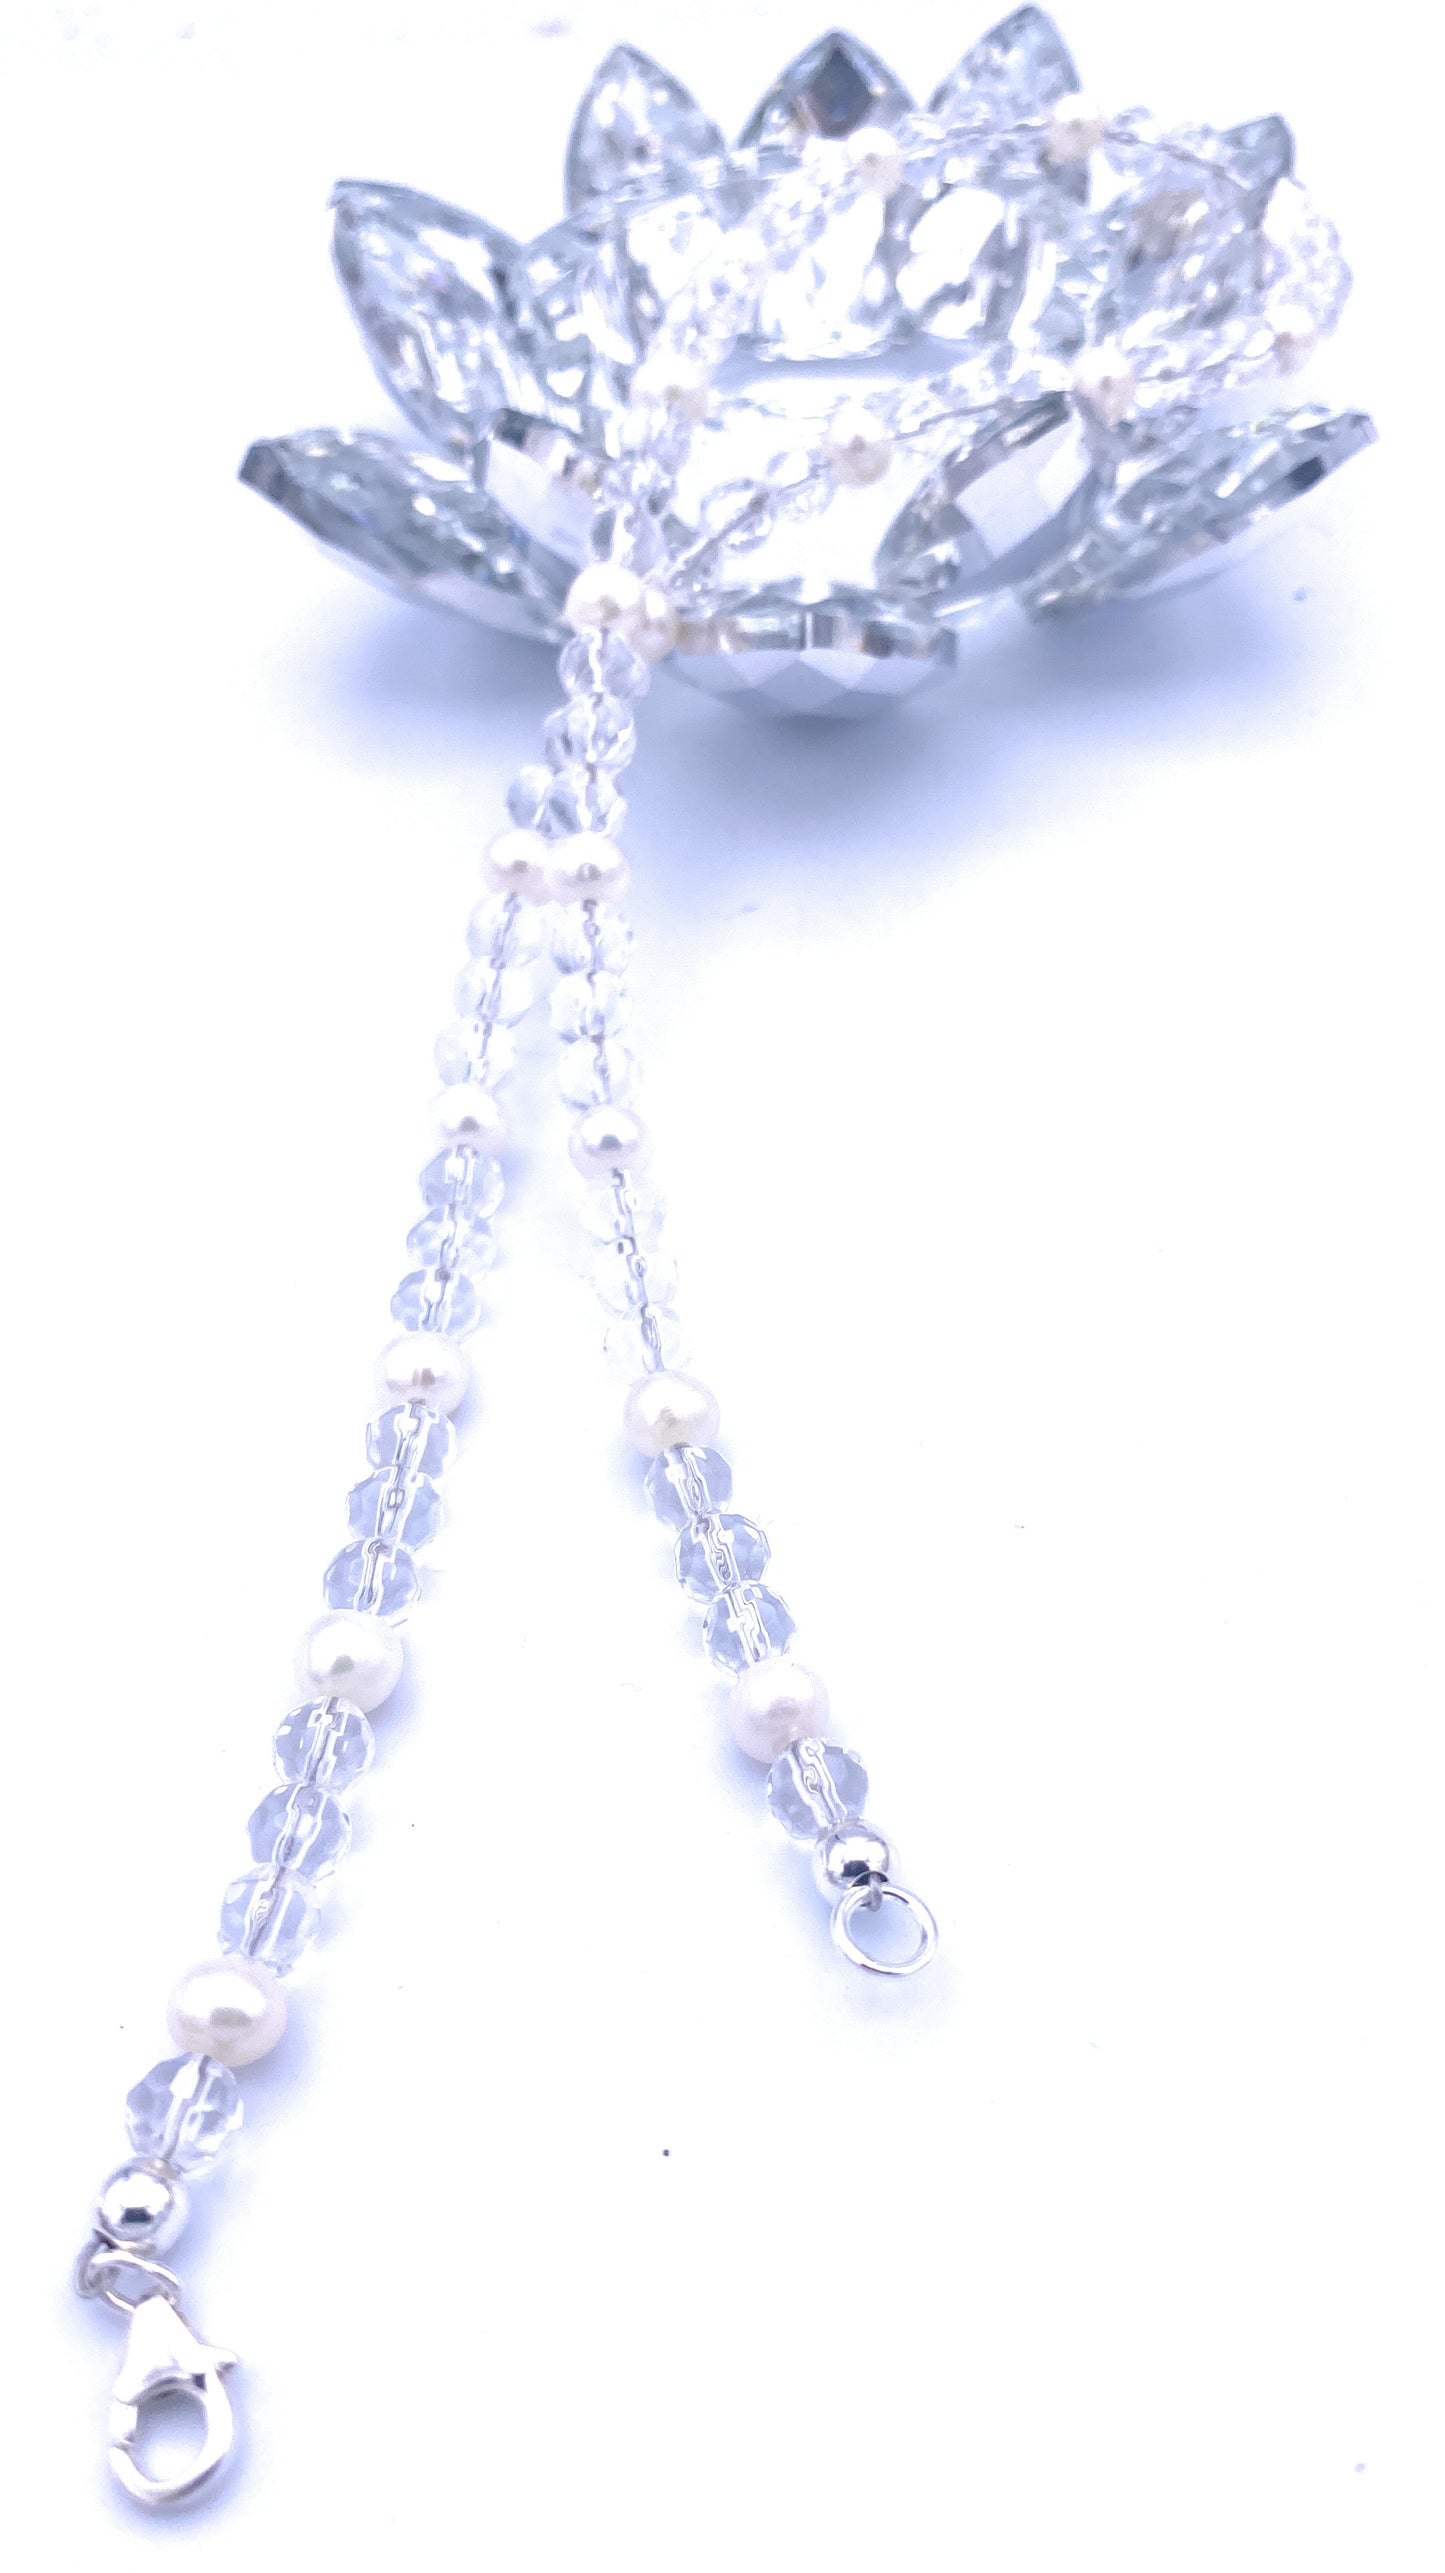 Facettierte Bergkristall Halskette 6mm mit Süßwasserperlen